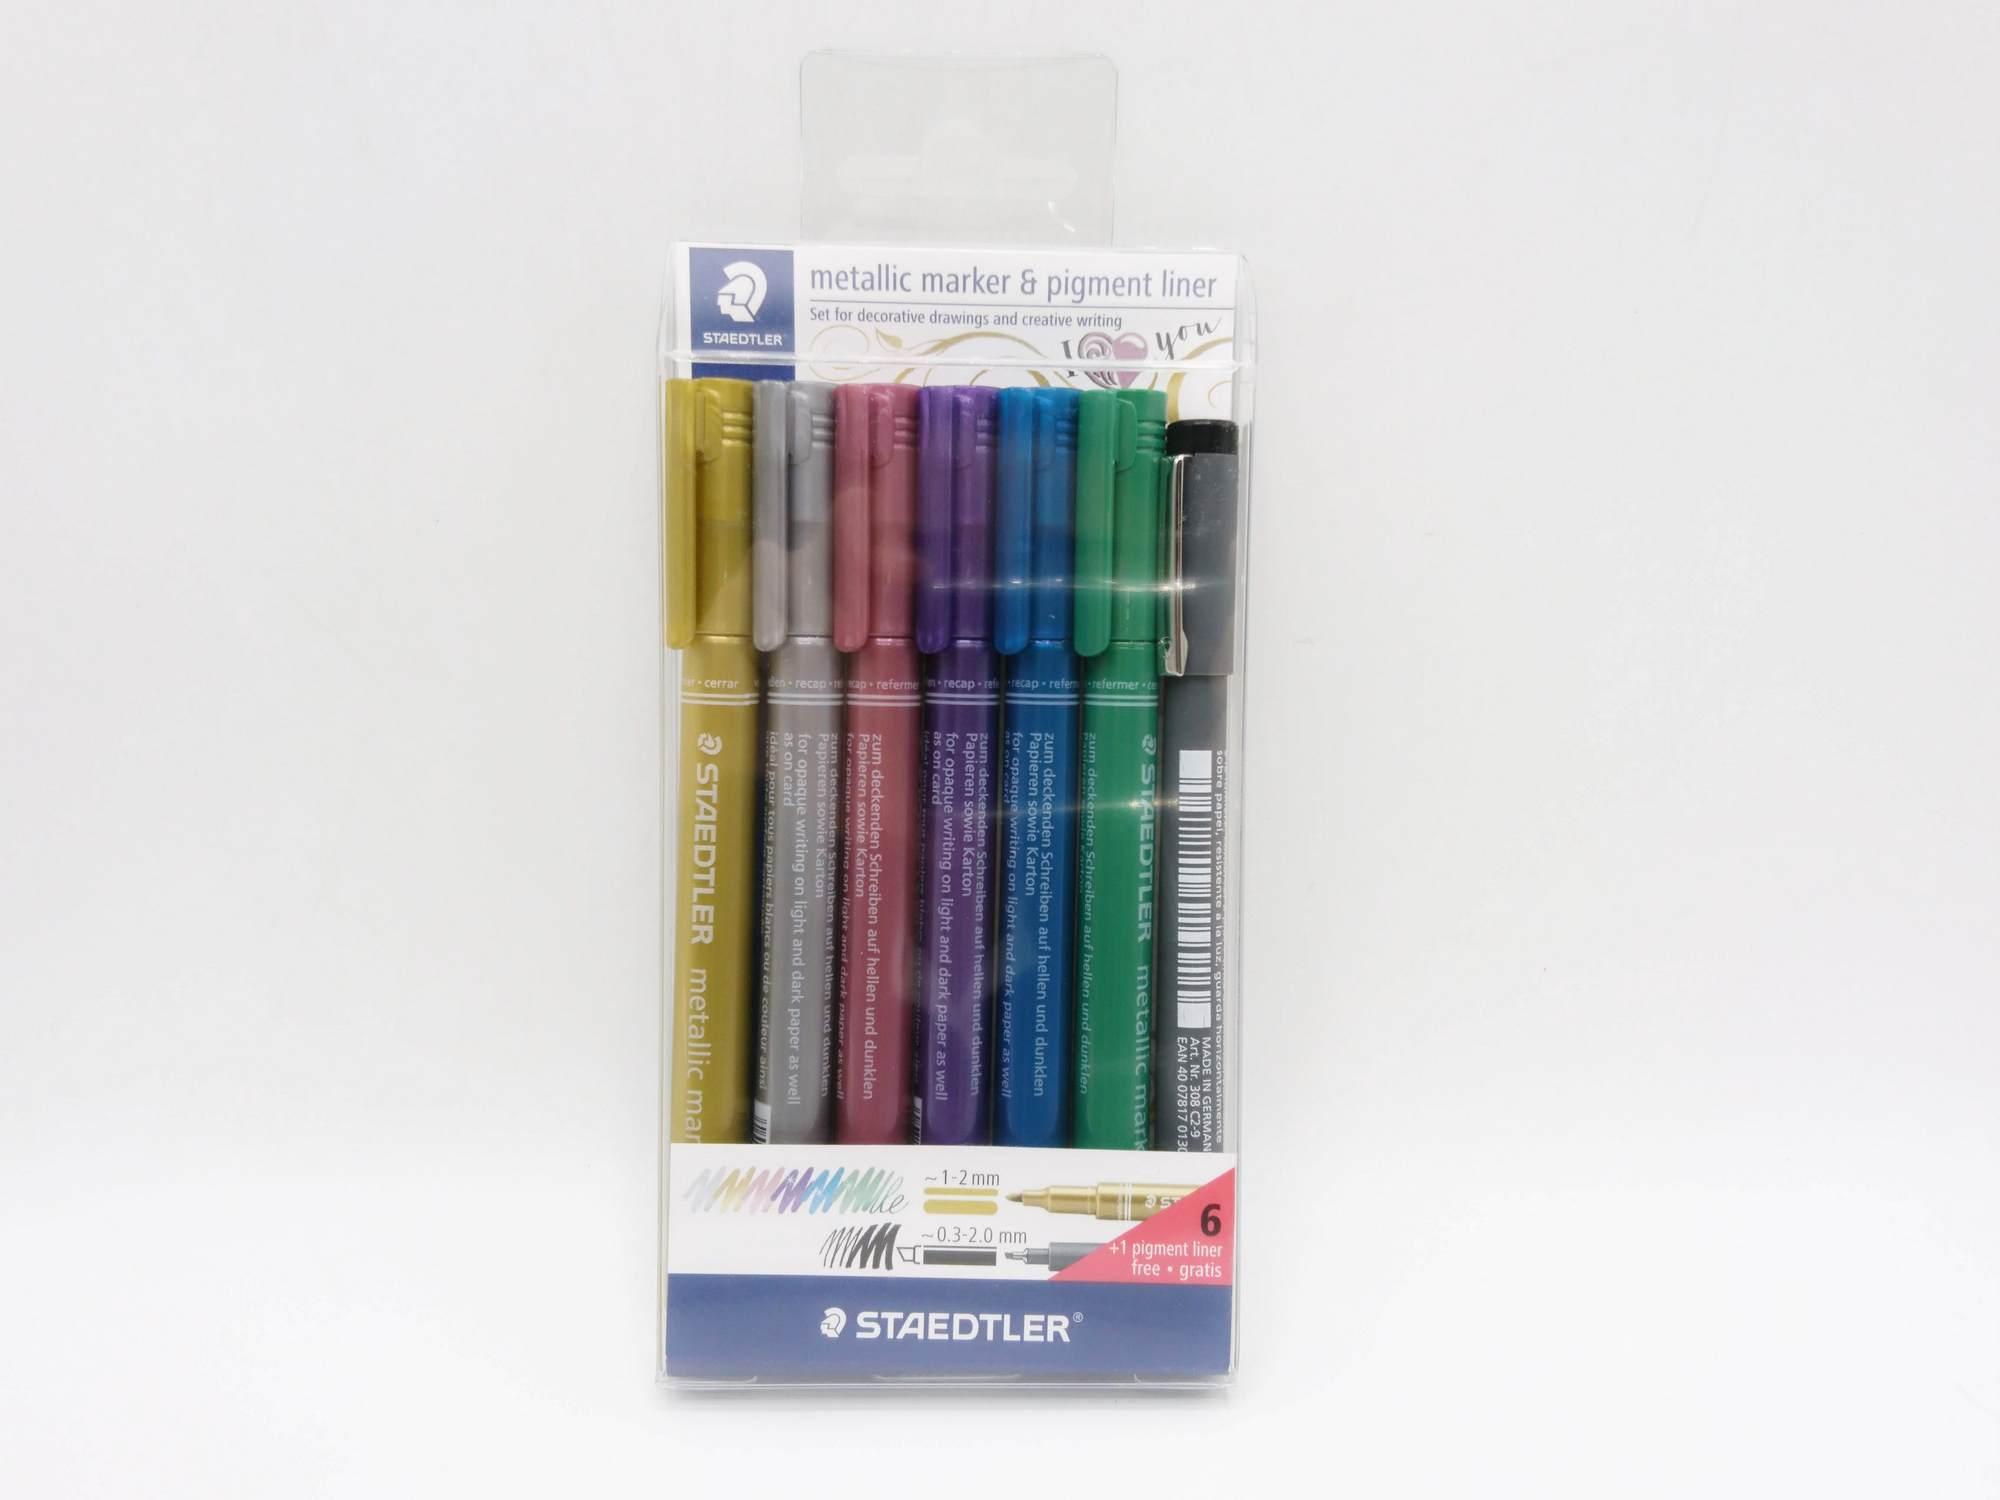 ชุดปากกา Staedtler Metallic Marker & Pigment Liner แพค 6 สี ** หัวตัด**